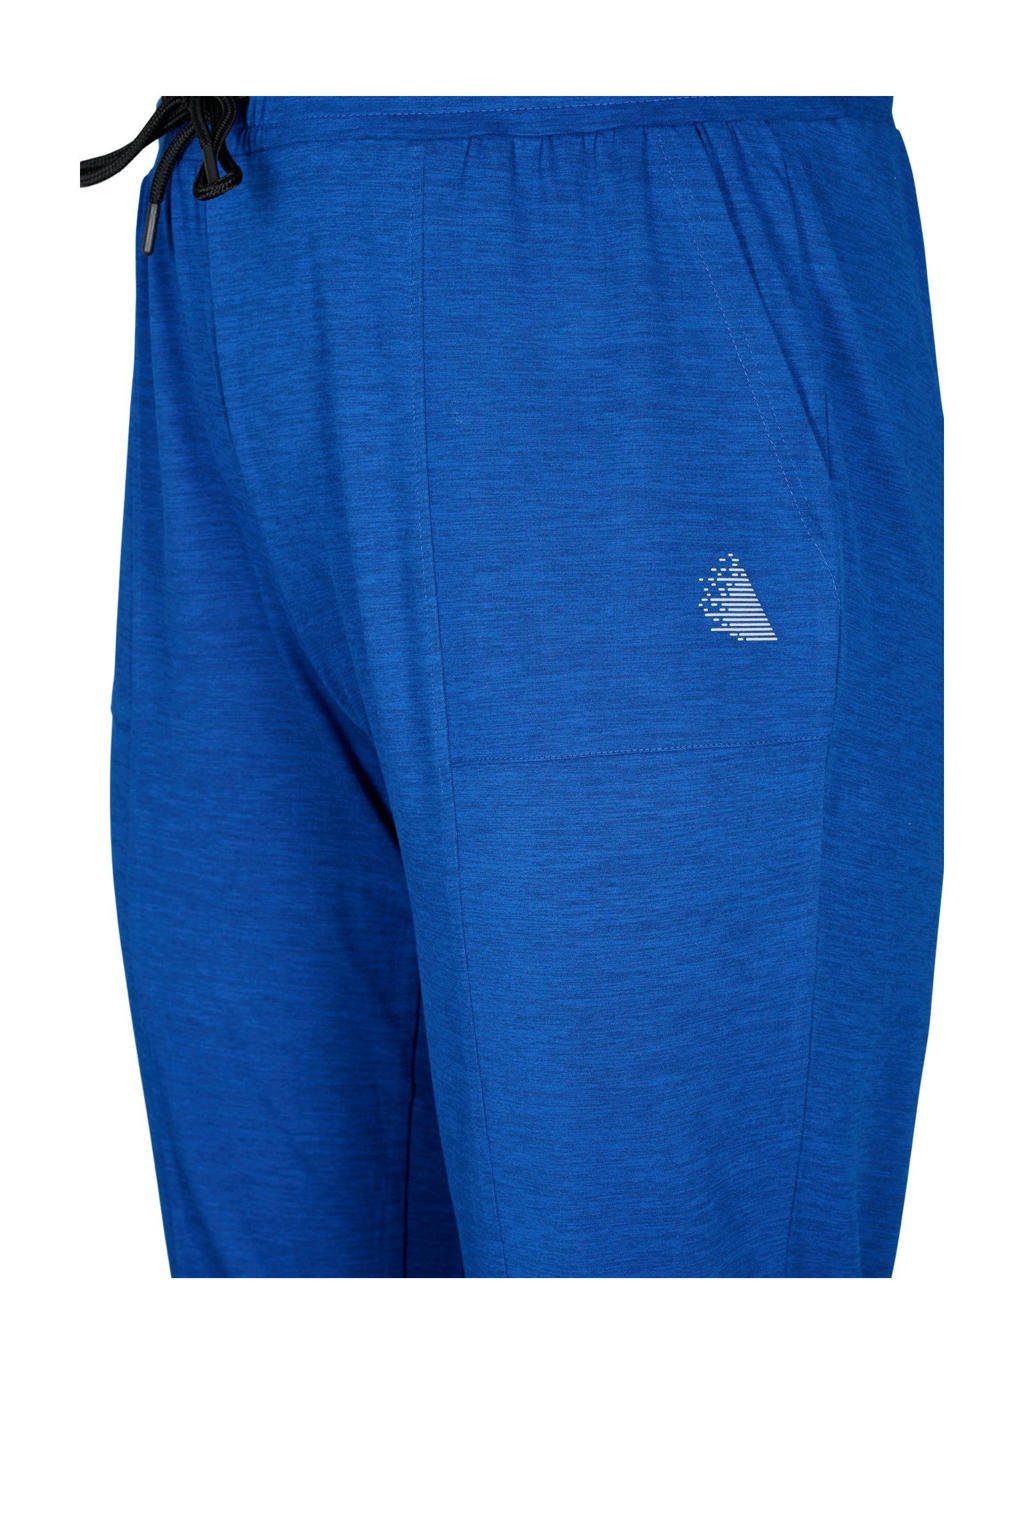 Blauwe dames ACTIVE By Zizzi Plus Size trainingsbroek van polyester met regular fit, regular waist en elastische tailleband met koord